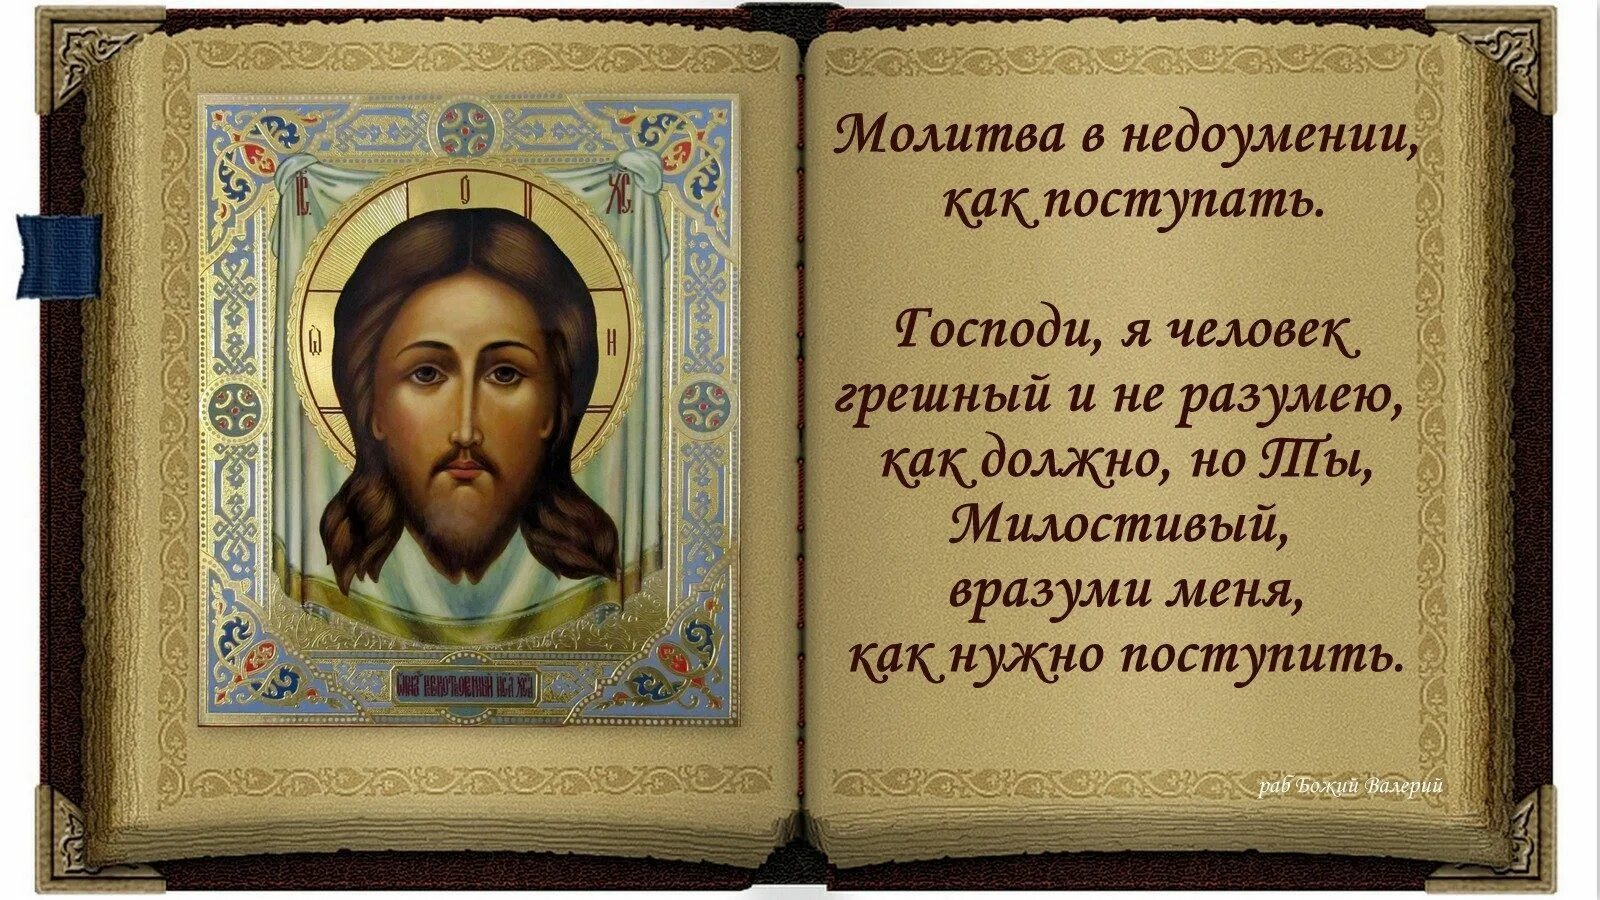 Короткие православные молитвы на ночь. Молитва. Икона с молитвой. Молитва Христианская. Молитва в недоумении.